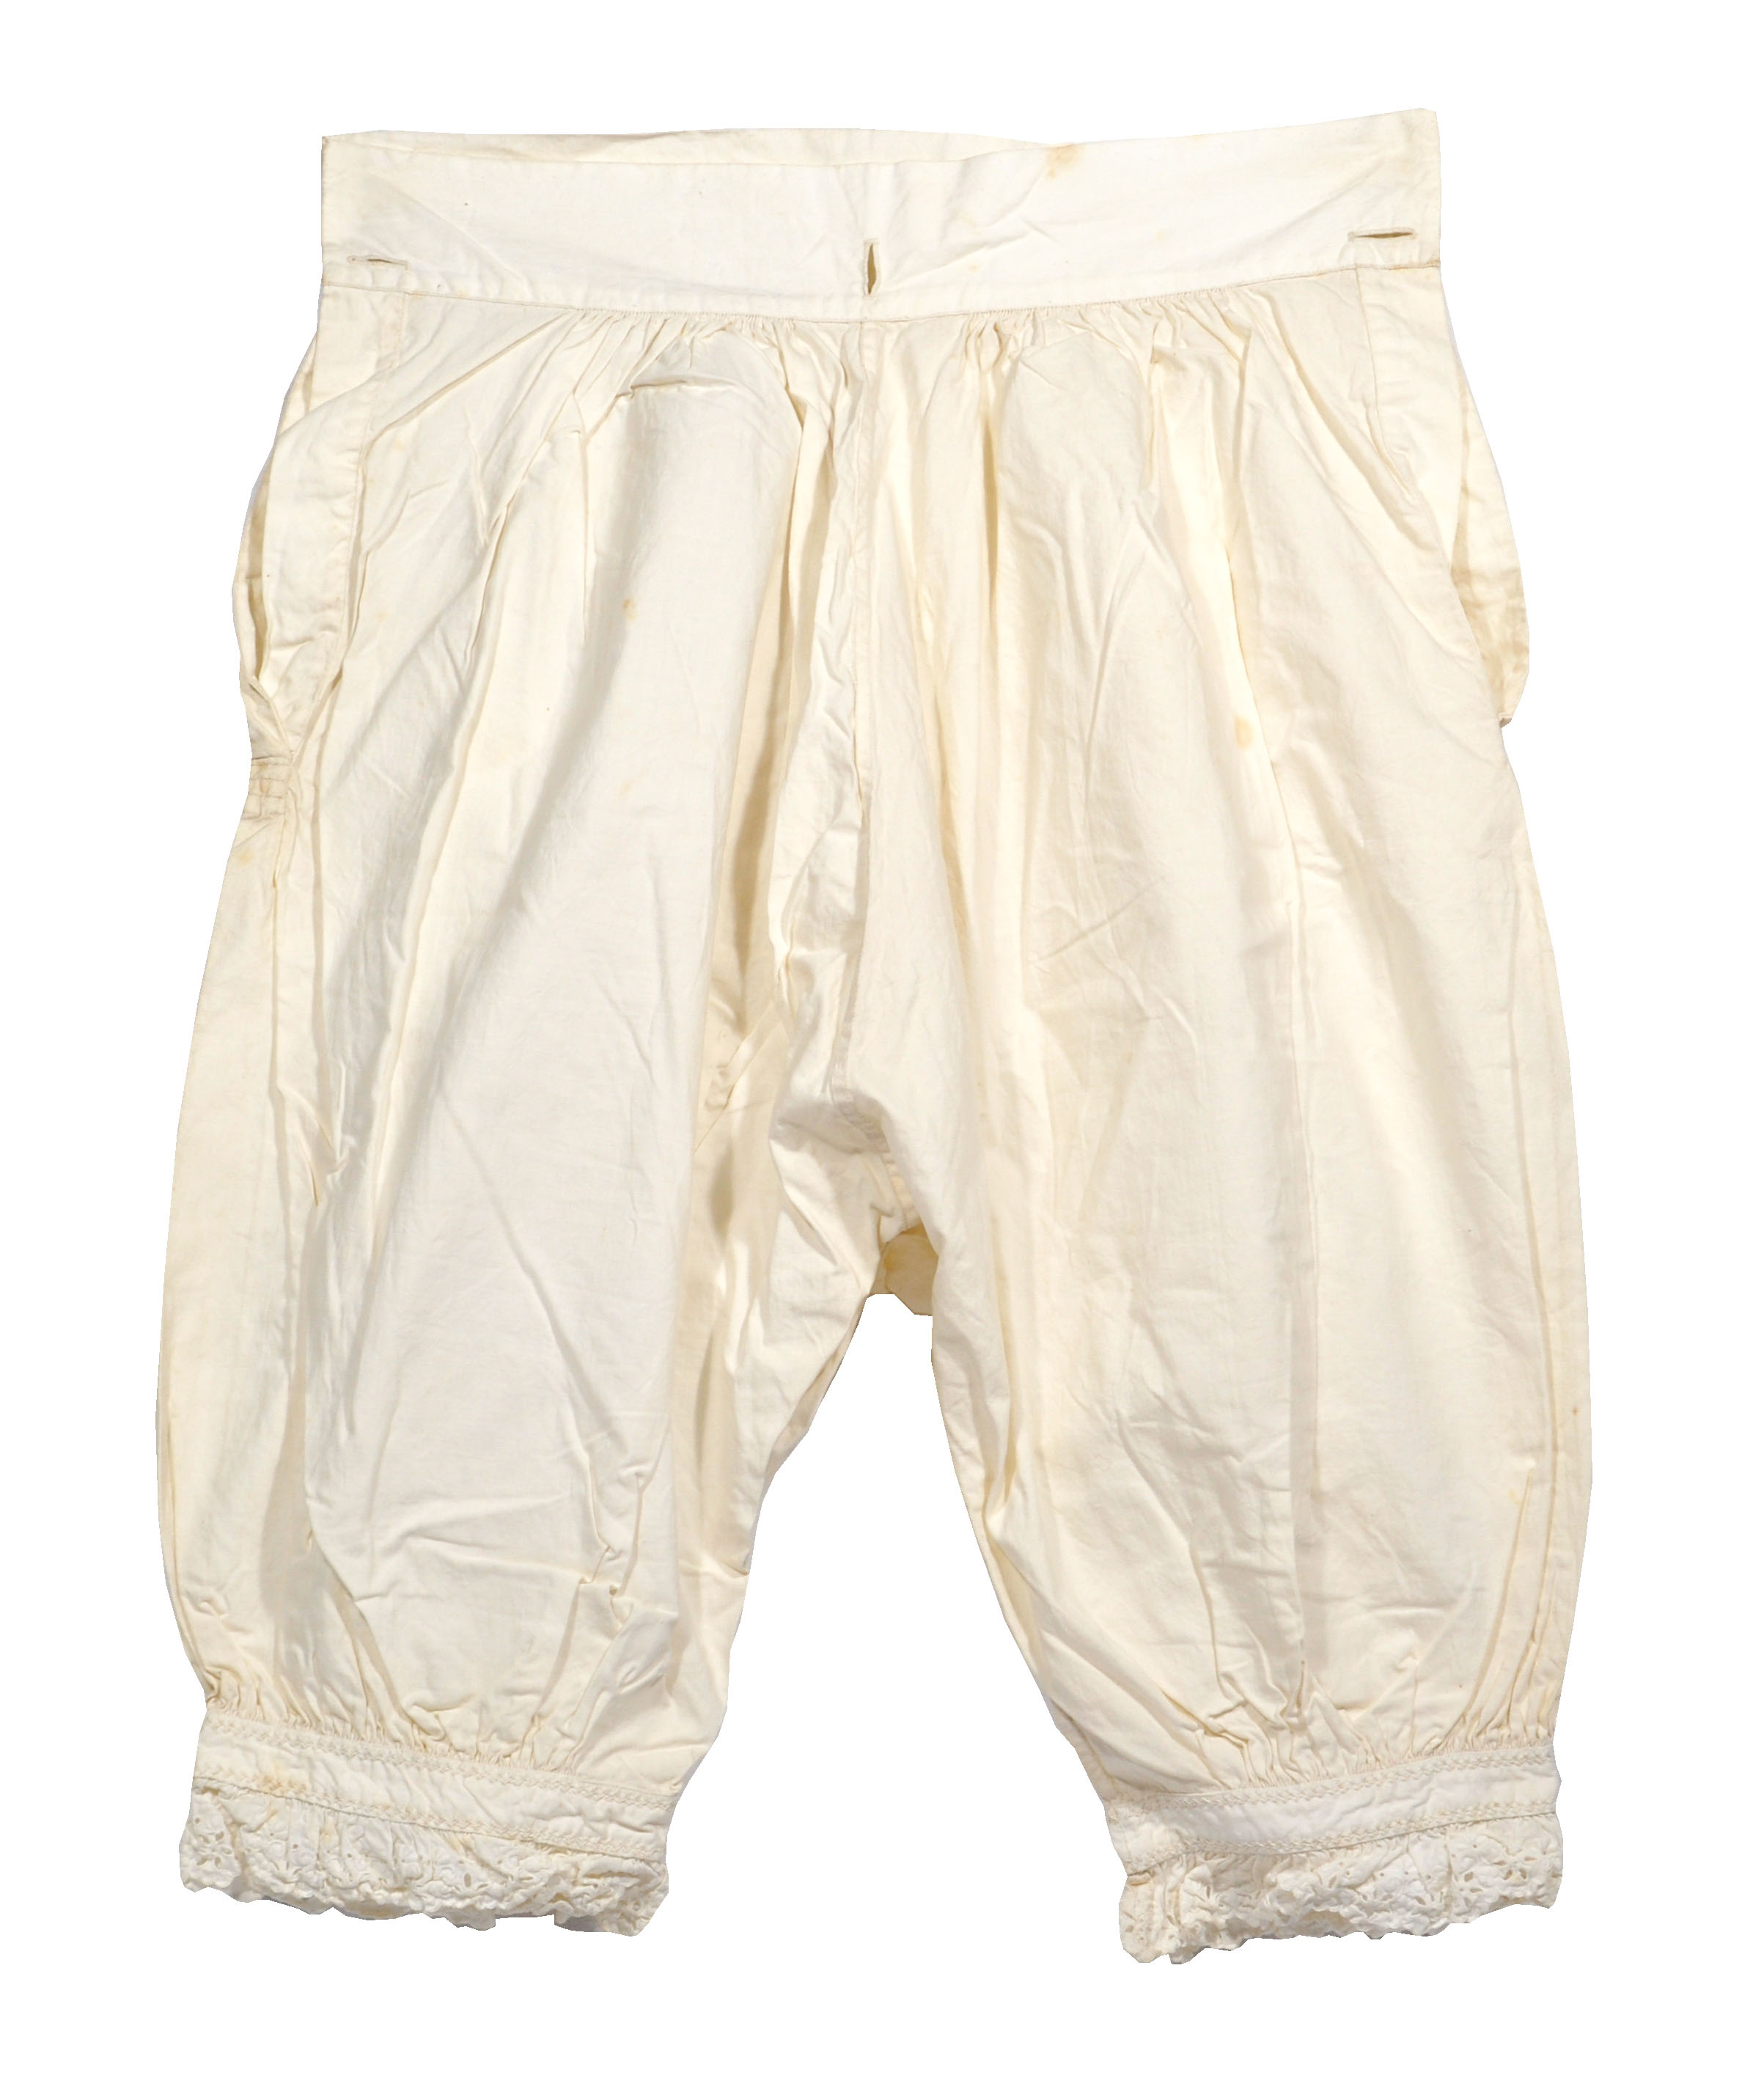 Victorian Bloomers, Victorian Undergarments, 1800s Underwear